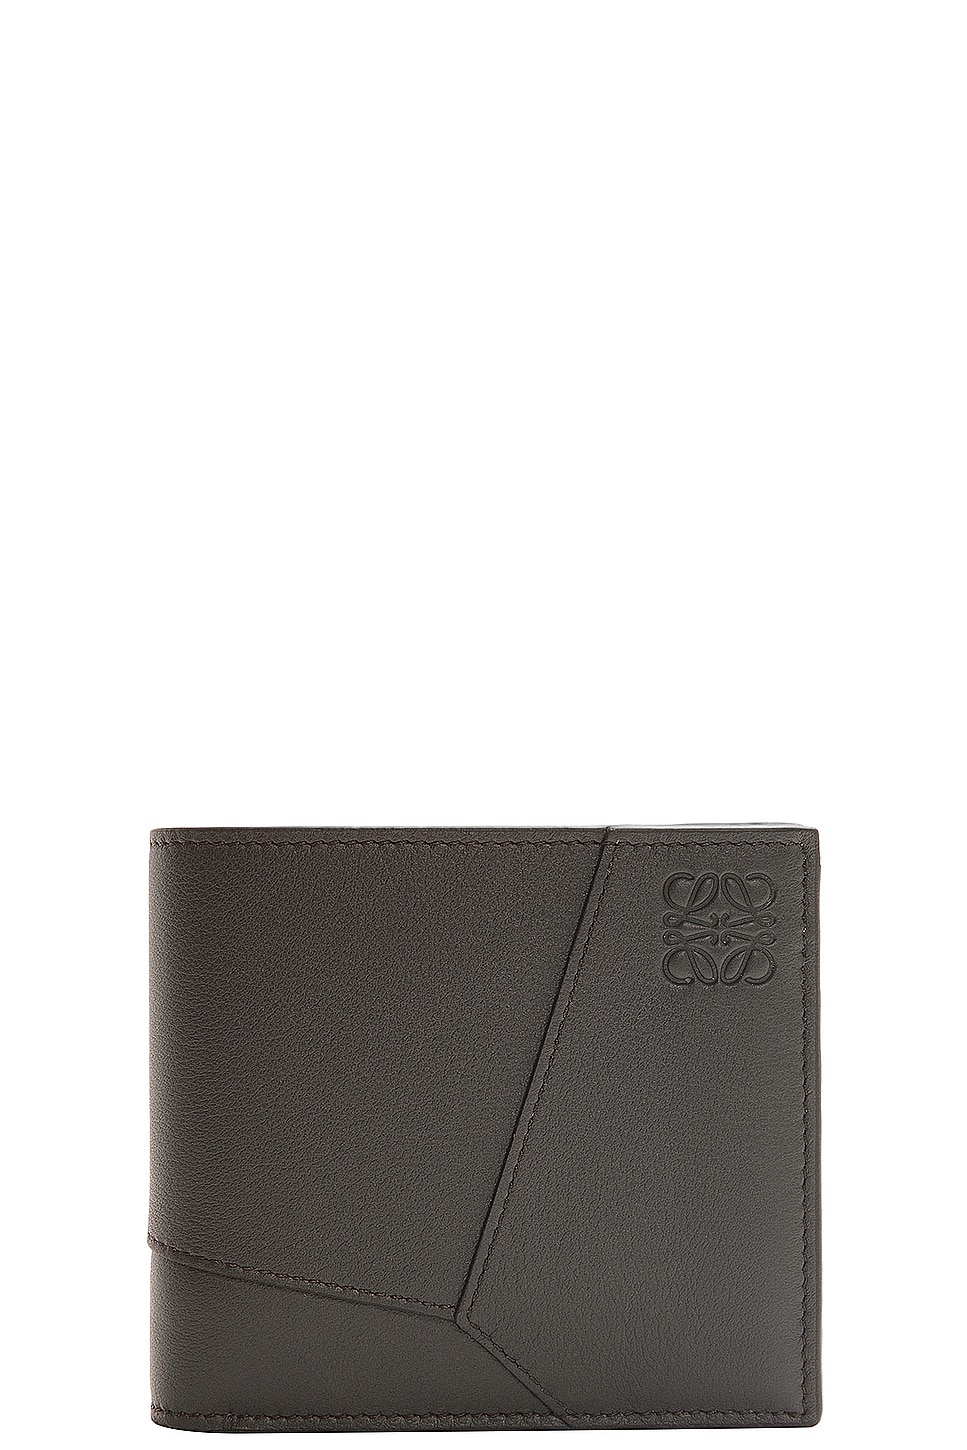 Loewe Puzzle Bifold Wallet In Classic Calfskin in Dark Green